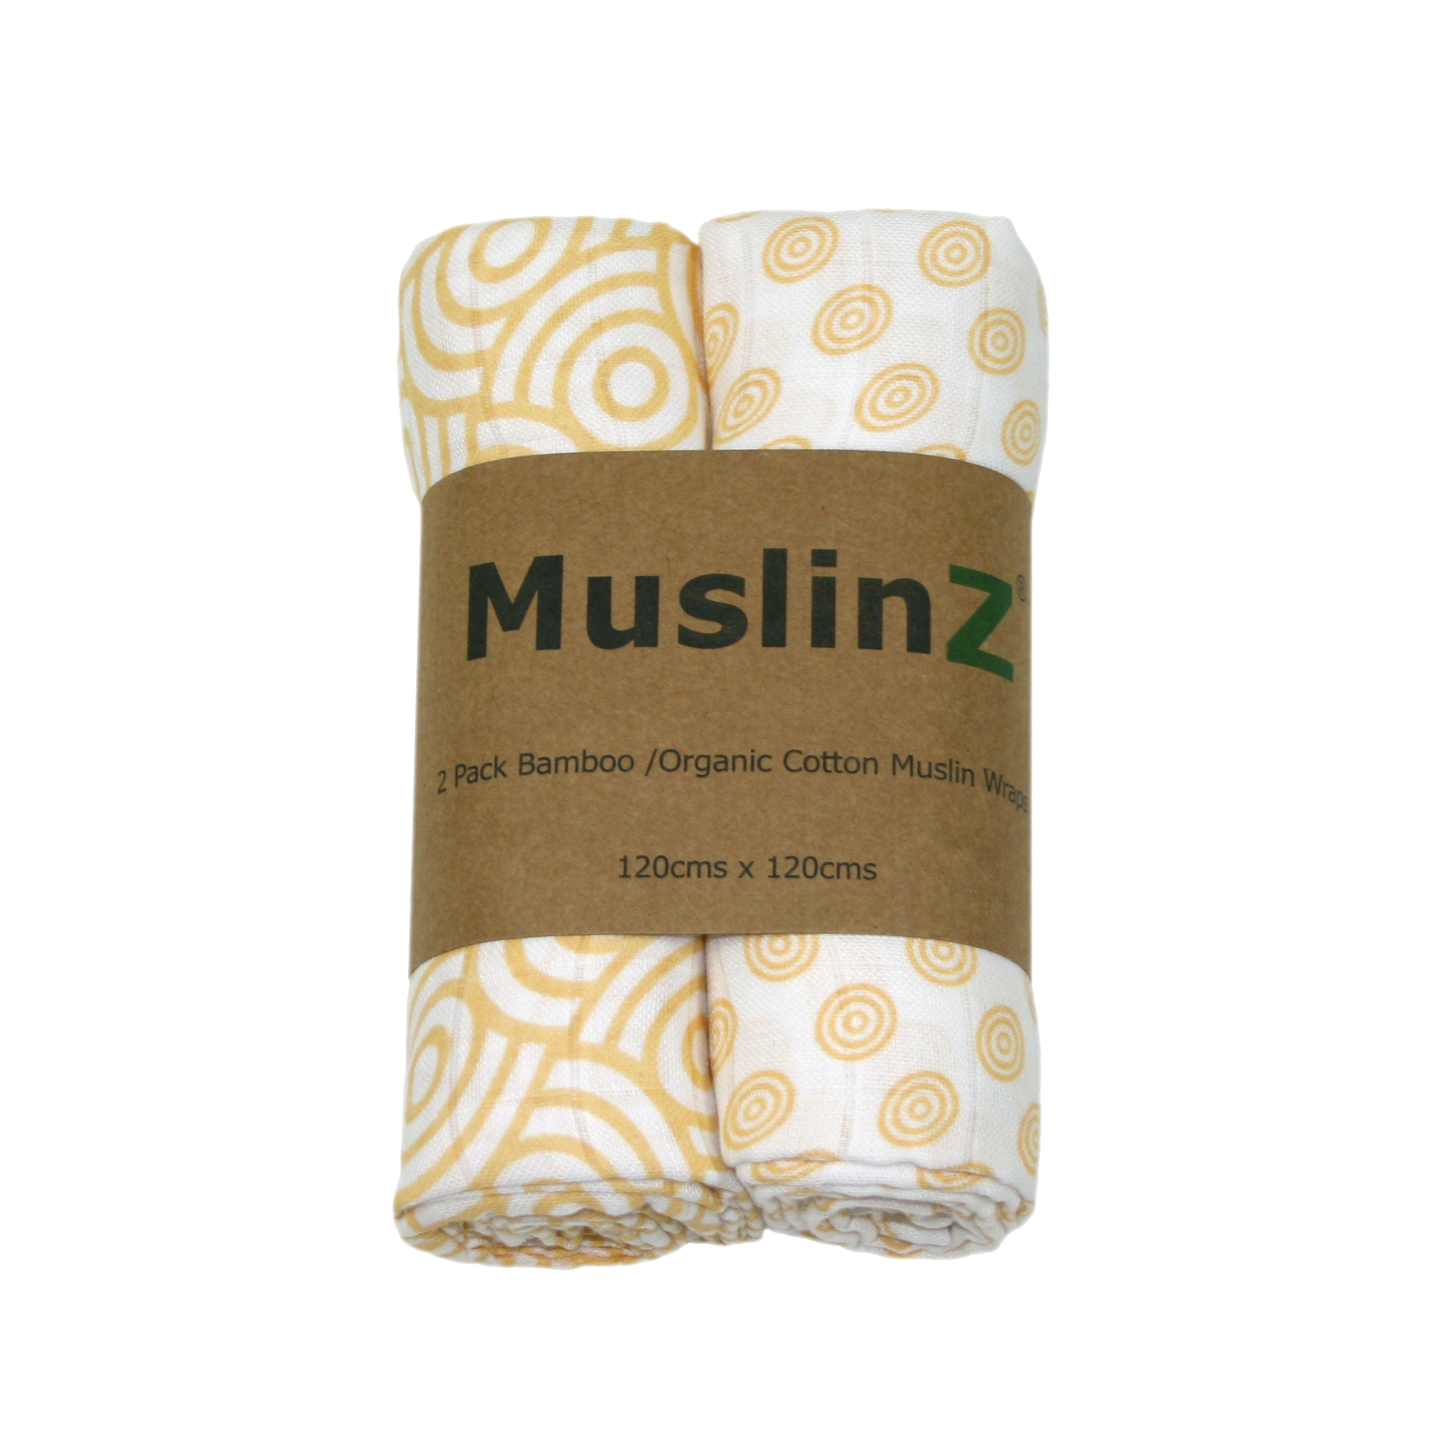 Muslinz 2 Pack Bamboo/Organic Cotton Muslin Swaddles 120x120cm – Gold Print